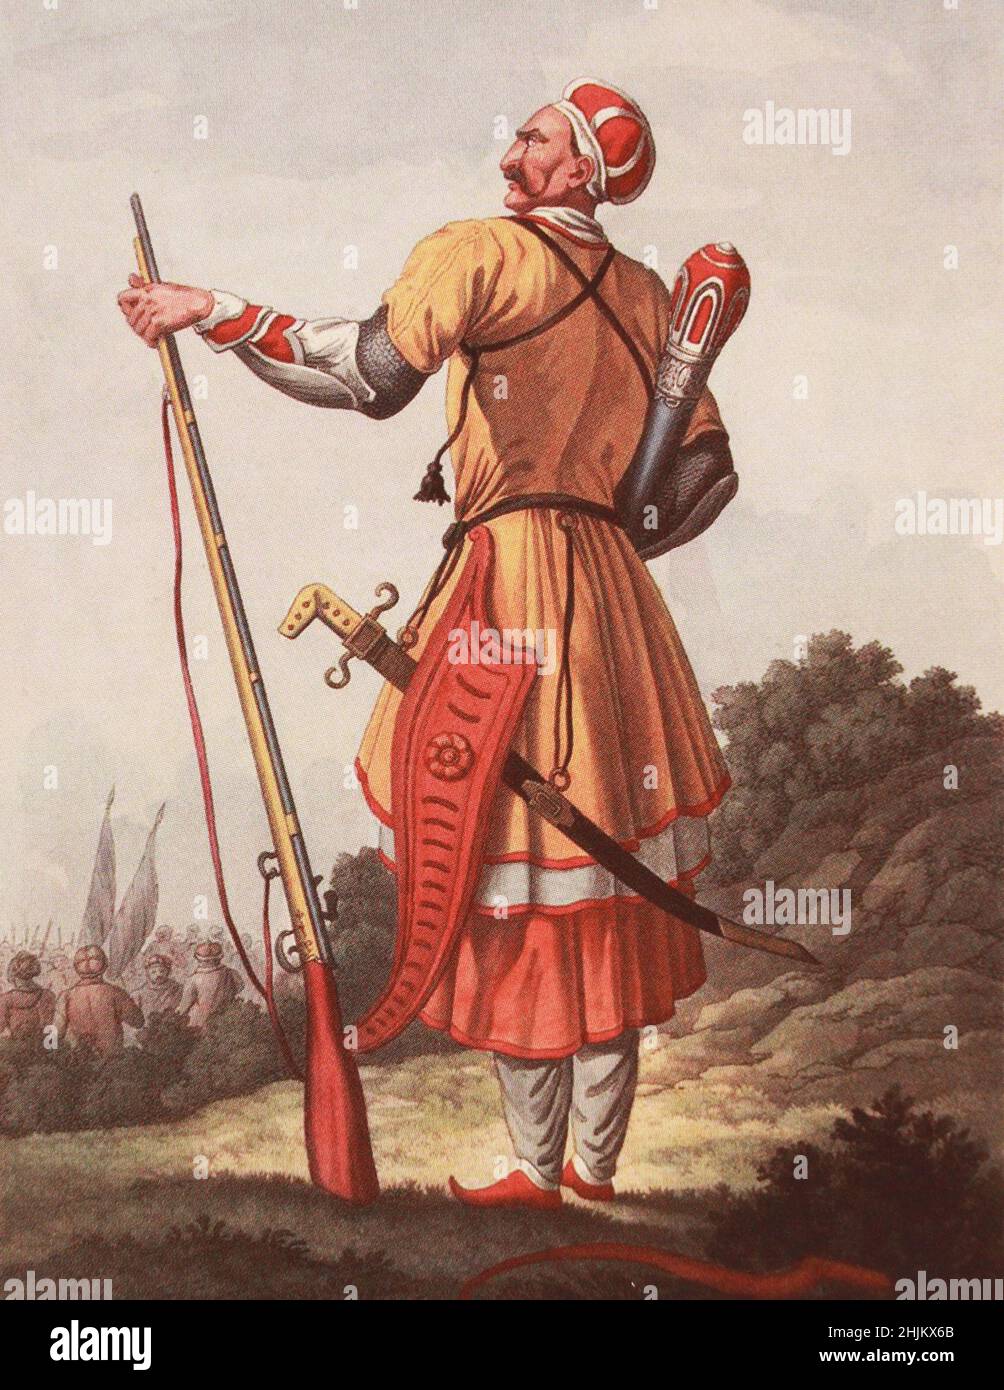 Prinz von Malaya Kabarda. Gravur des 19th. Jahrhunderts. Stockfoto